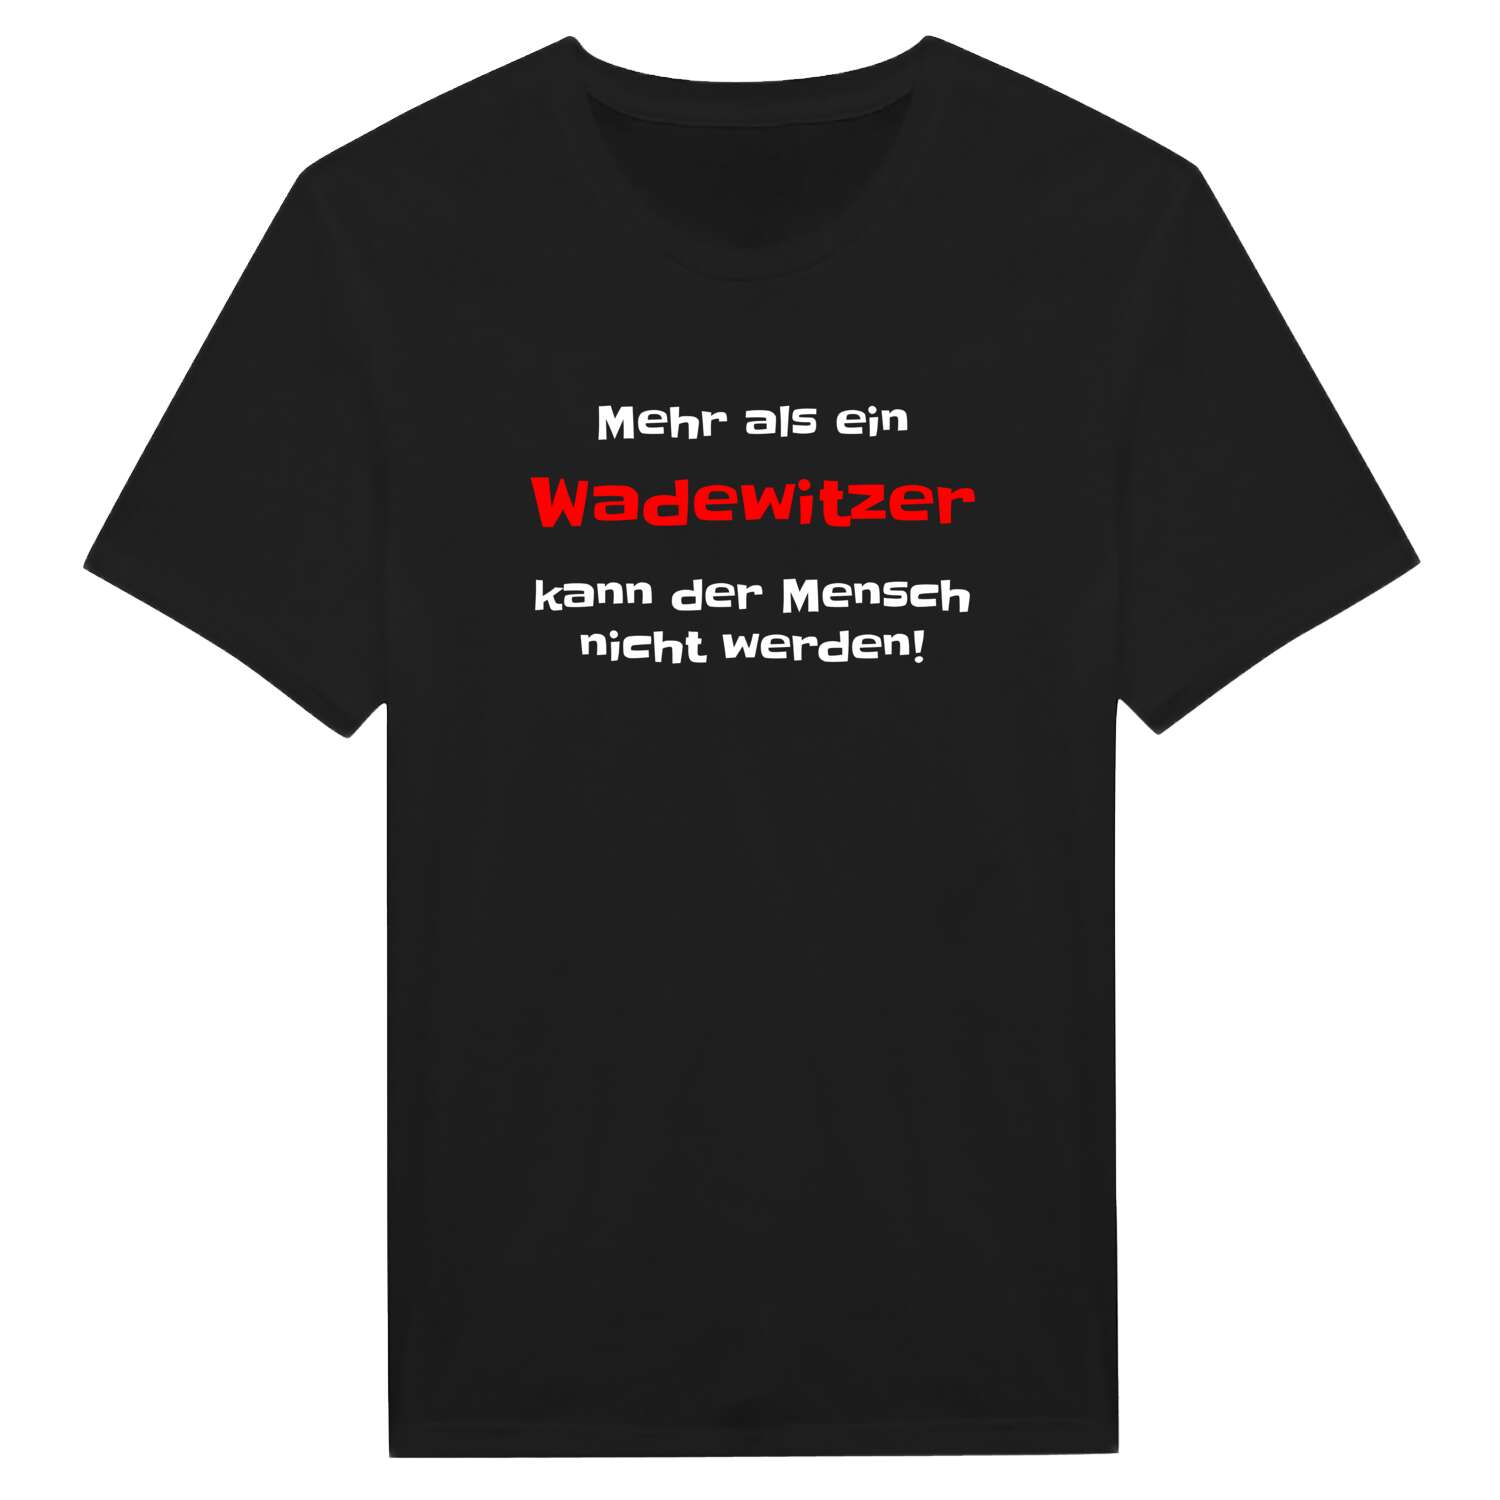 Wadewitz T-Shirt »Mehr als ein«